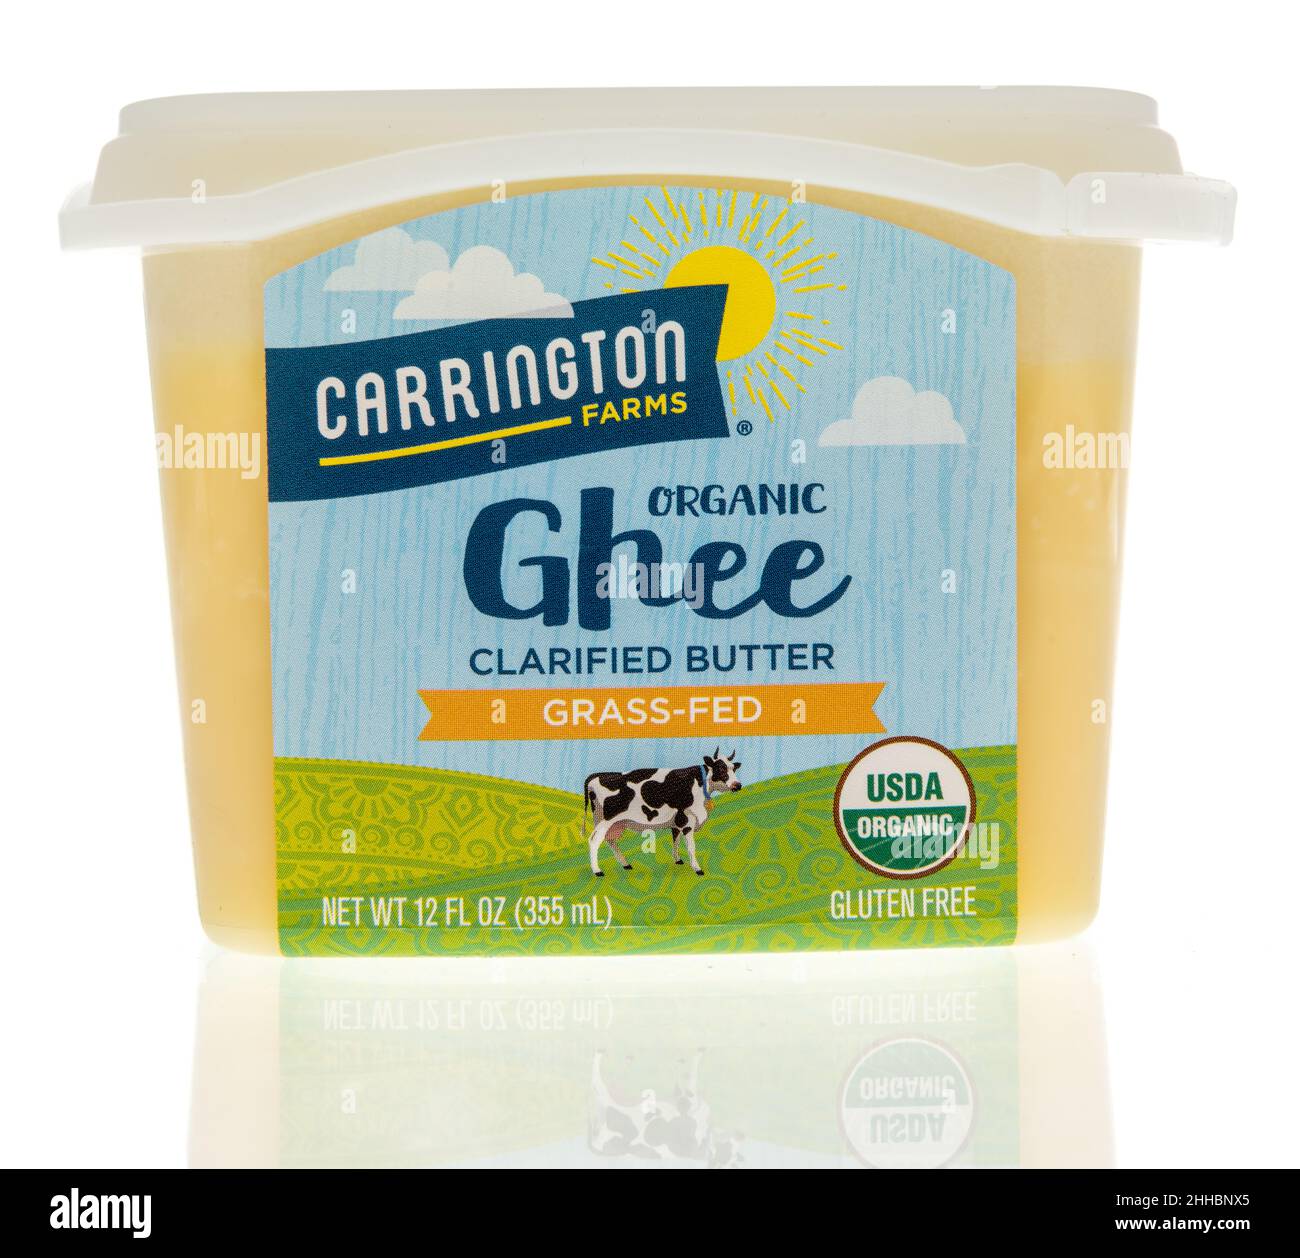 Winneconne, WI -23 janvier 2021: Un paquet de ghee organique Carrington Farms clarifie le beurre sur un fond isolé Banque D'Images